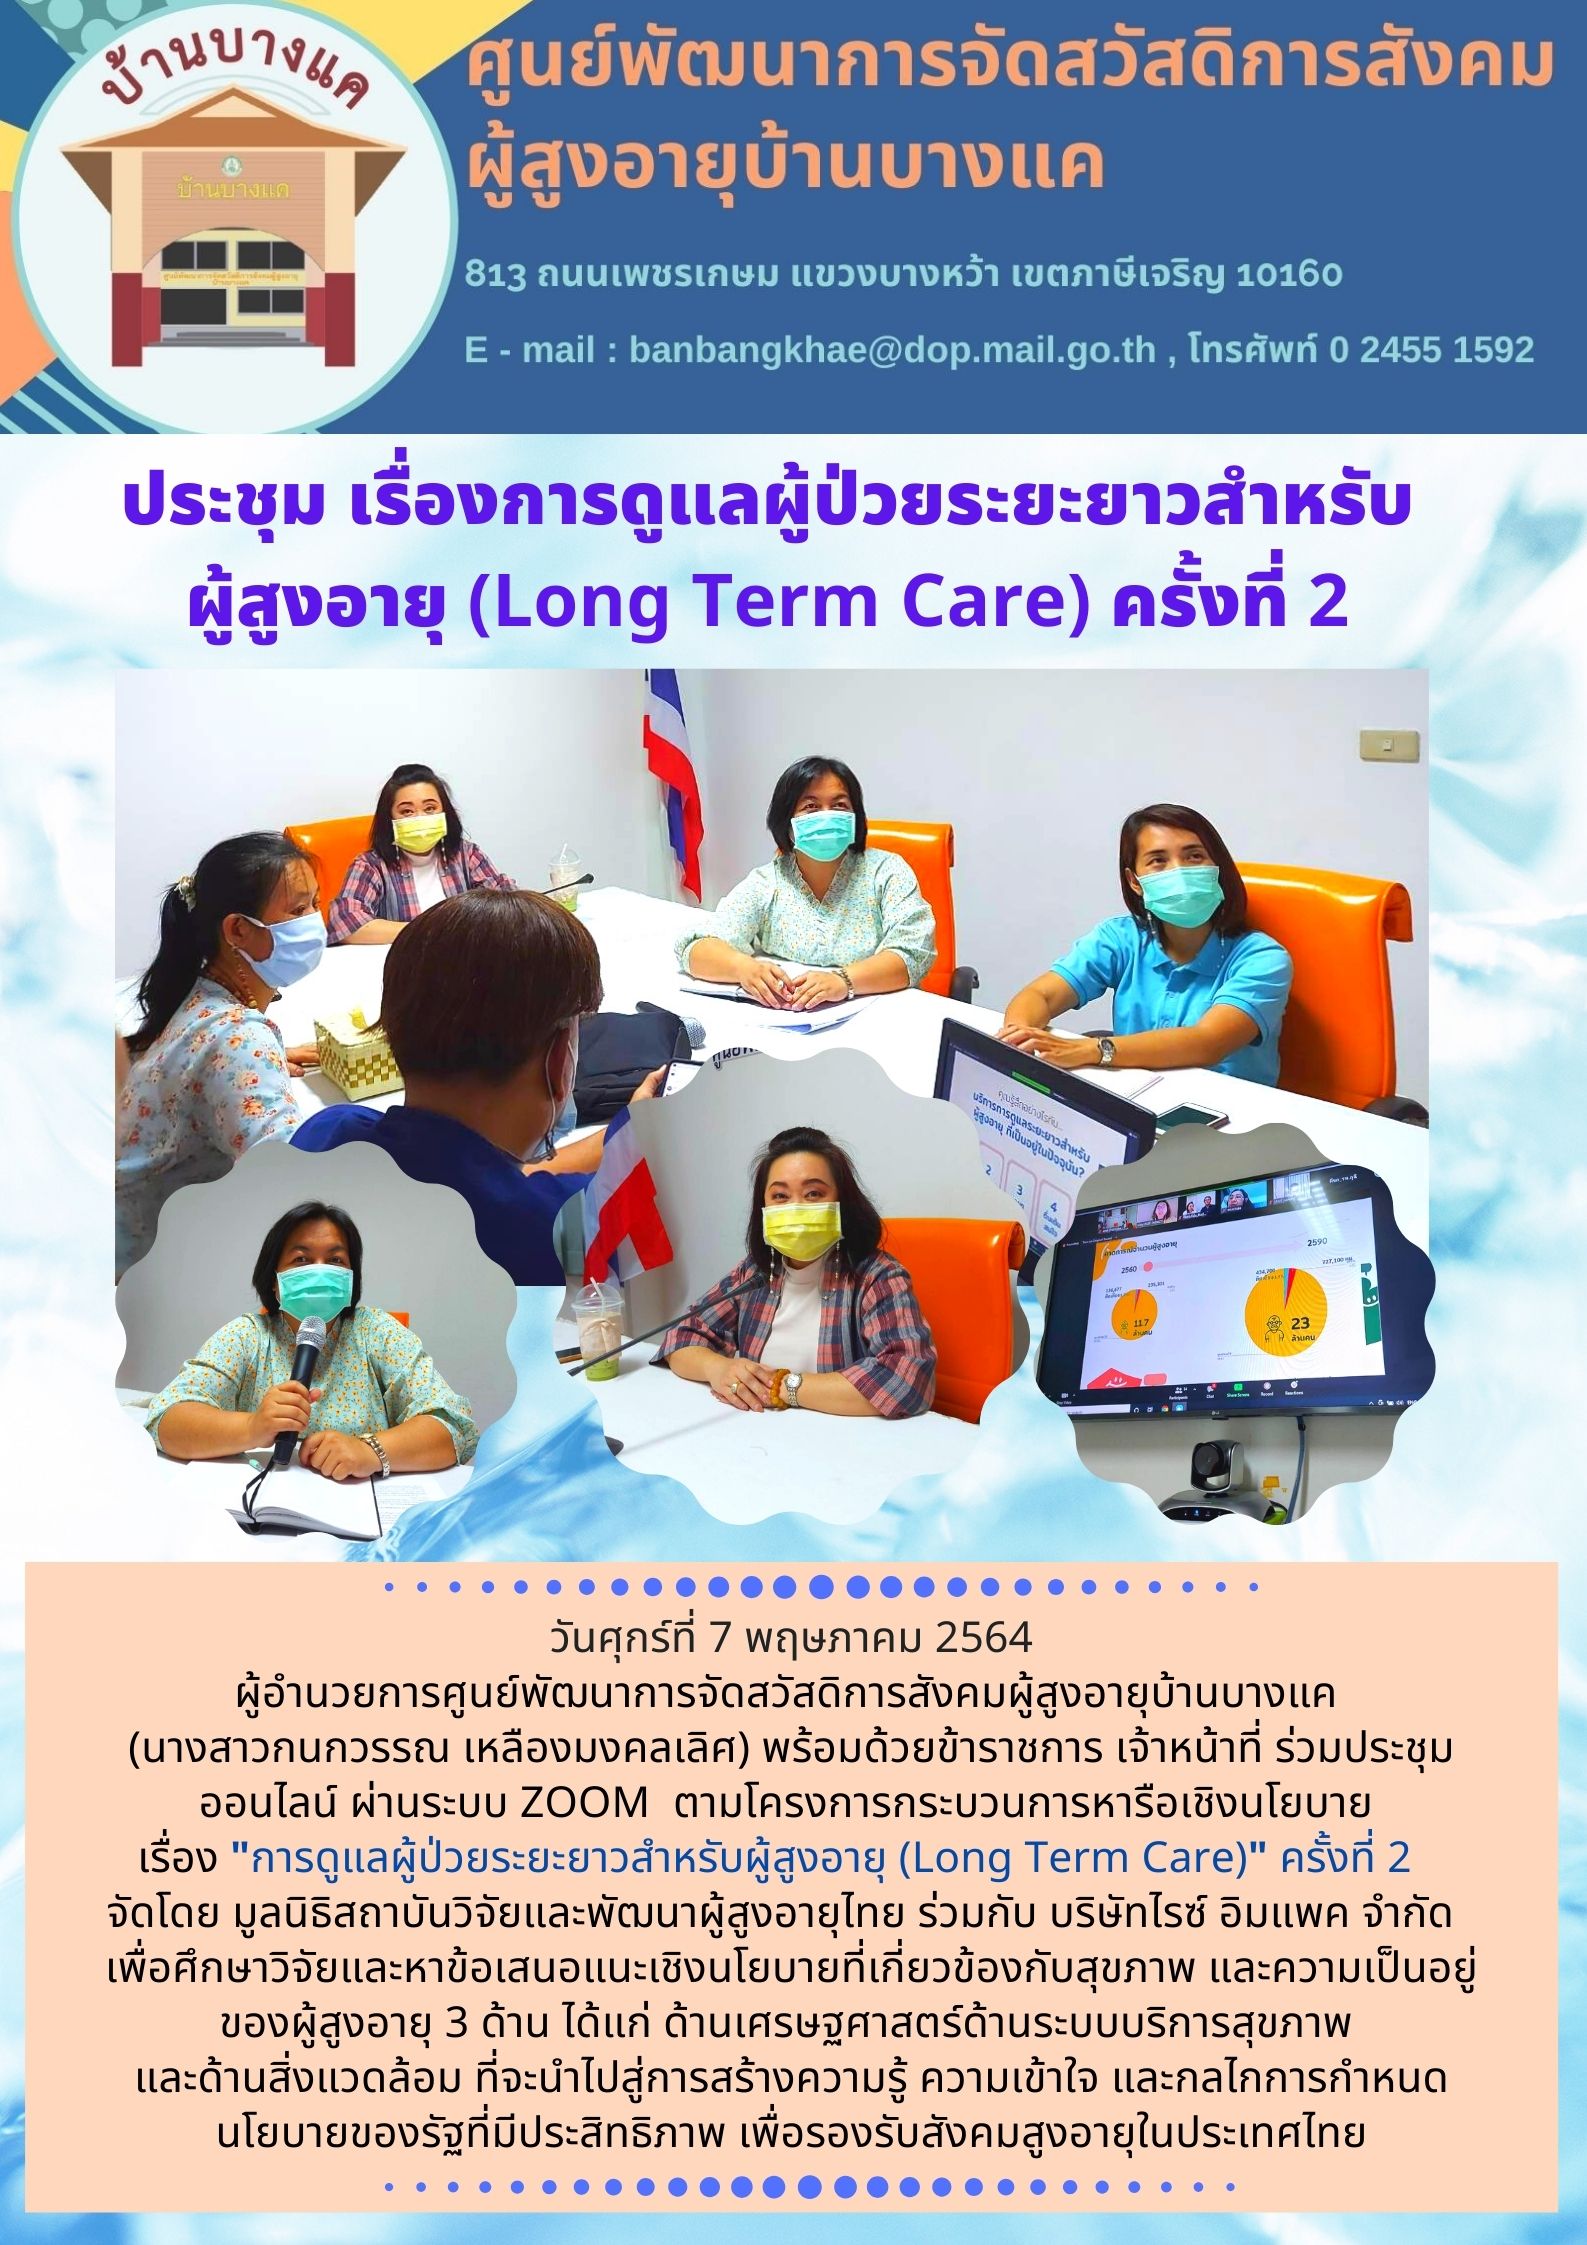 ร่วมประชุมออนไลน์ ผ่านระบบ ZOOM การดูแลผู้ป่วยระยะยาวสำหรับผู้สูงอายุ (Long Term Care)